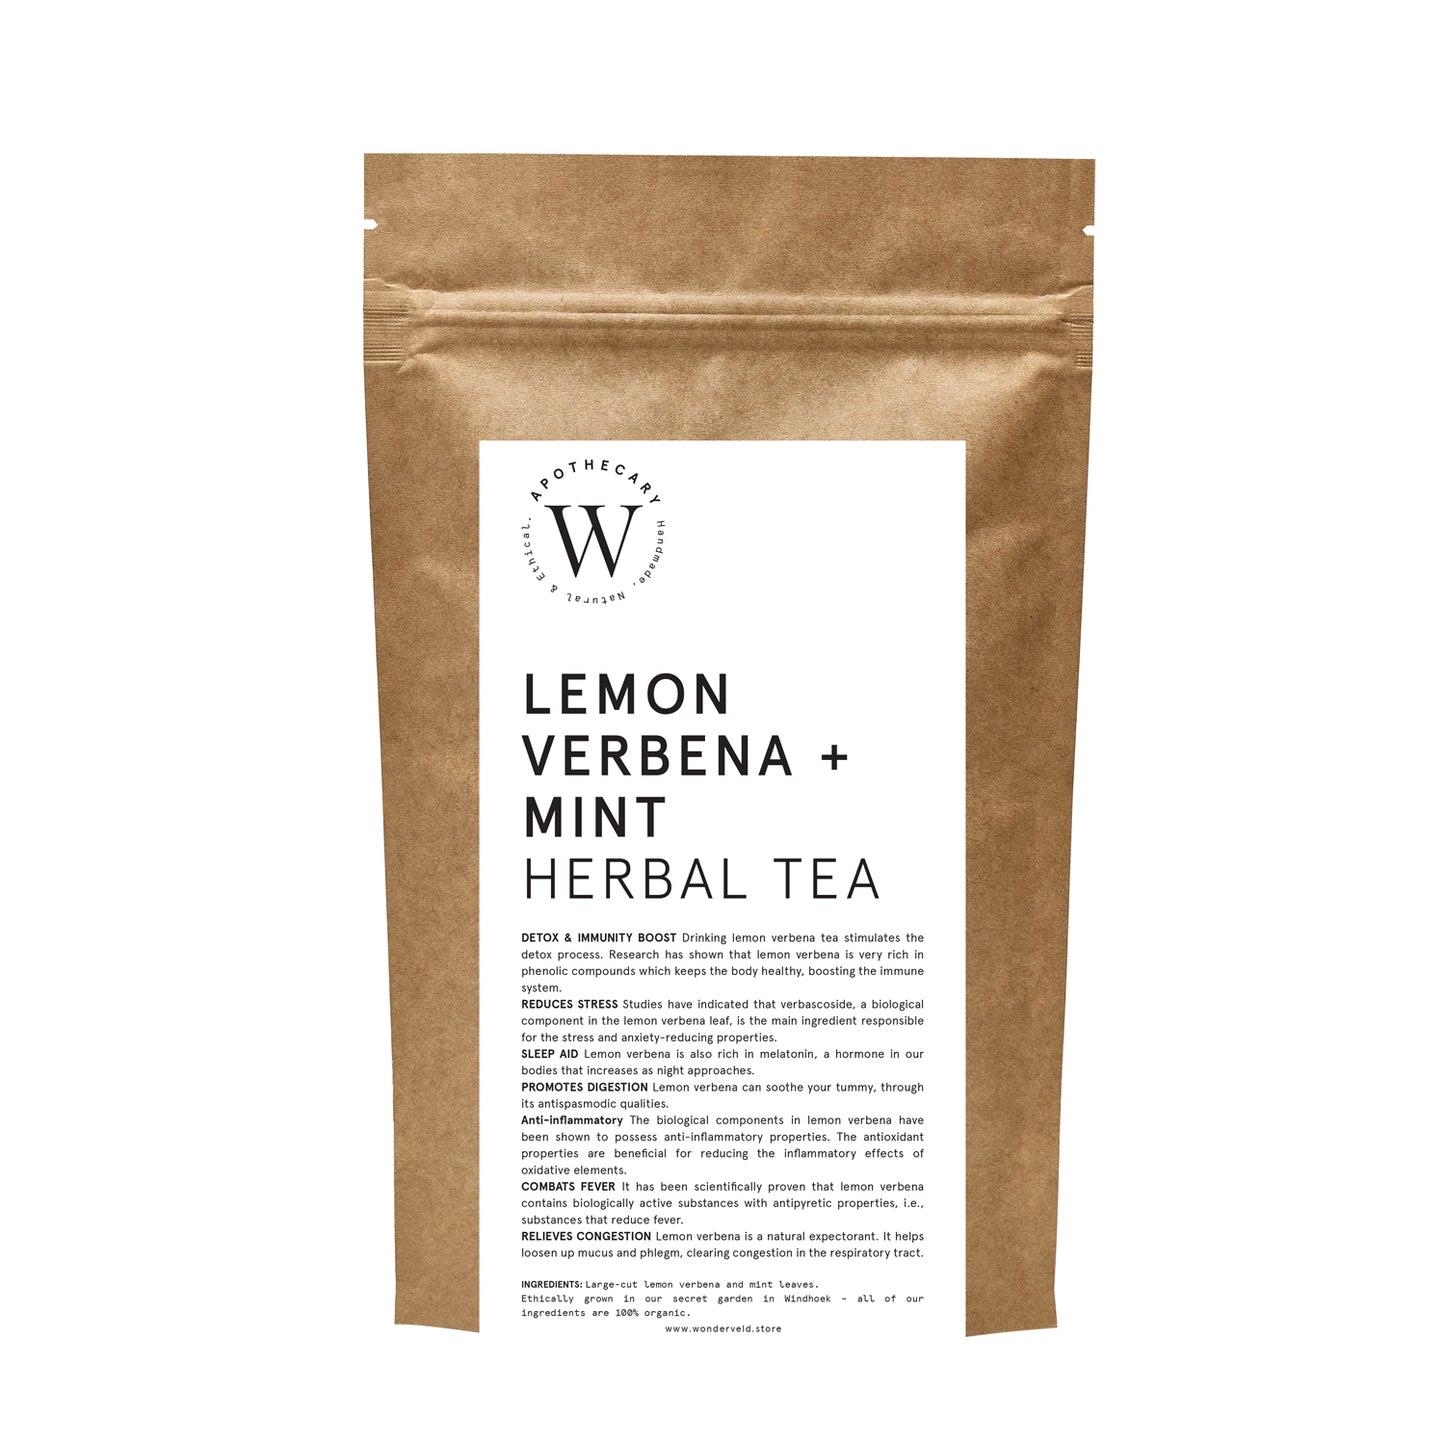 LEMON VERBENA + MINT HERBAL TEA